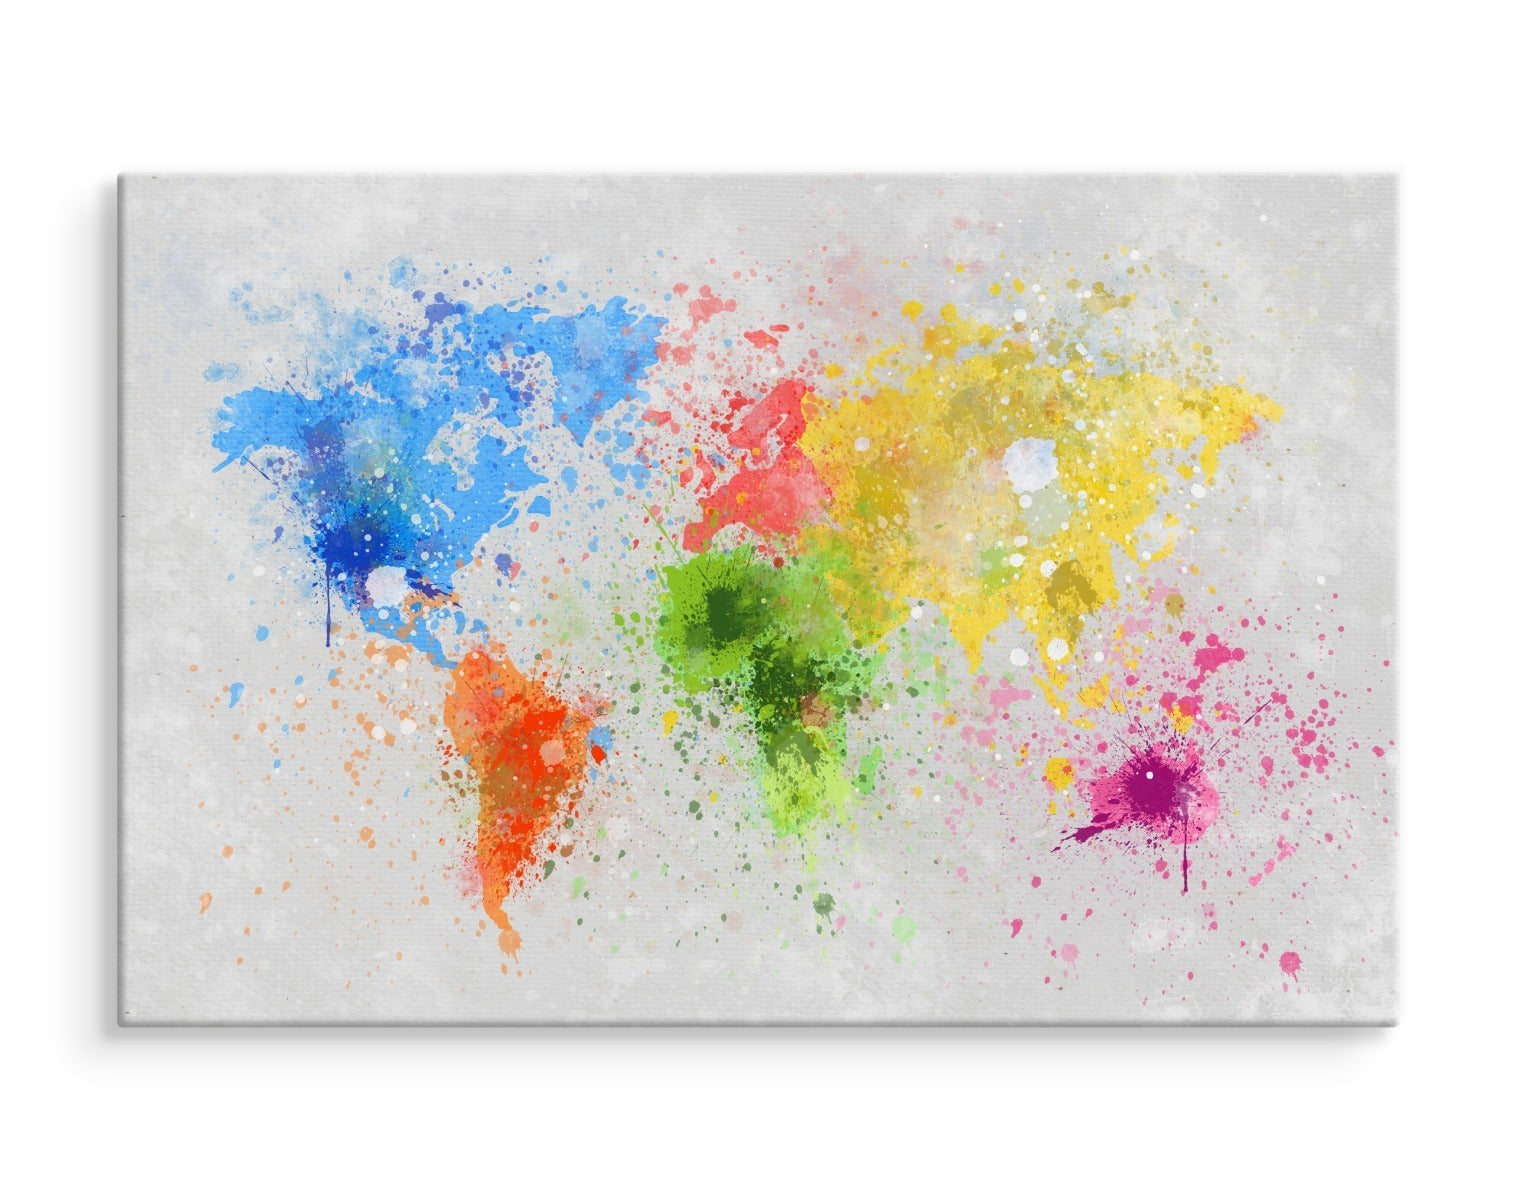 Fargerikt verdenskart malt i akvarell